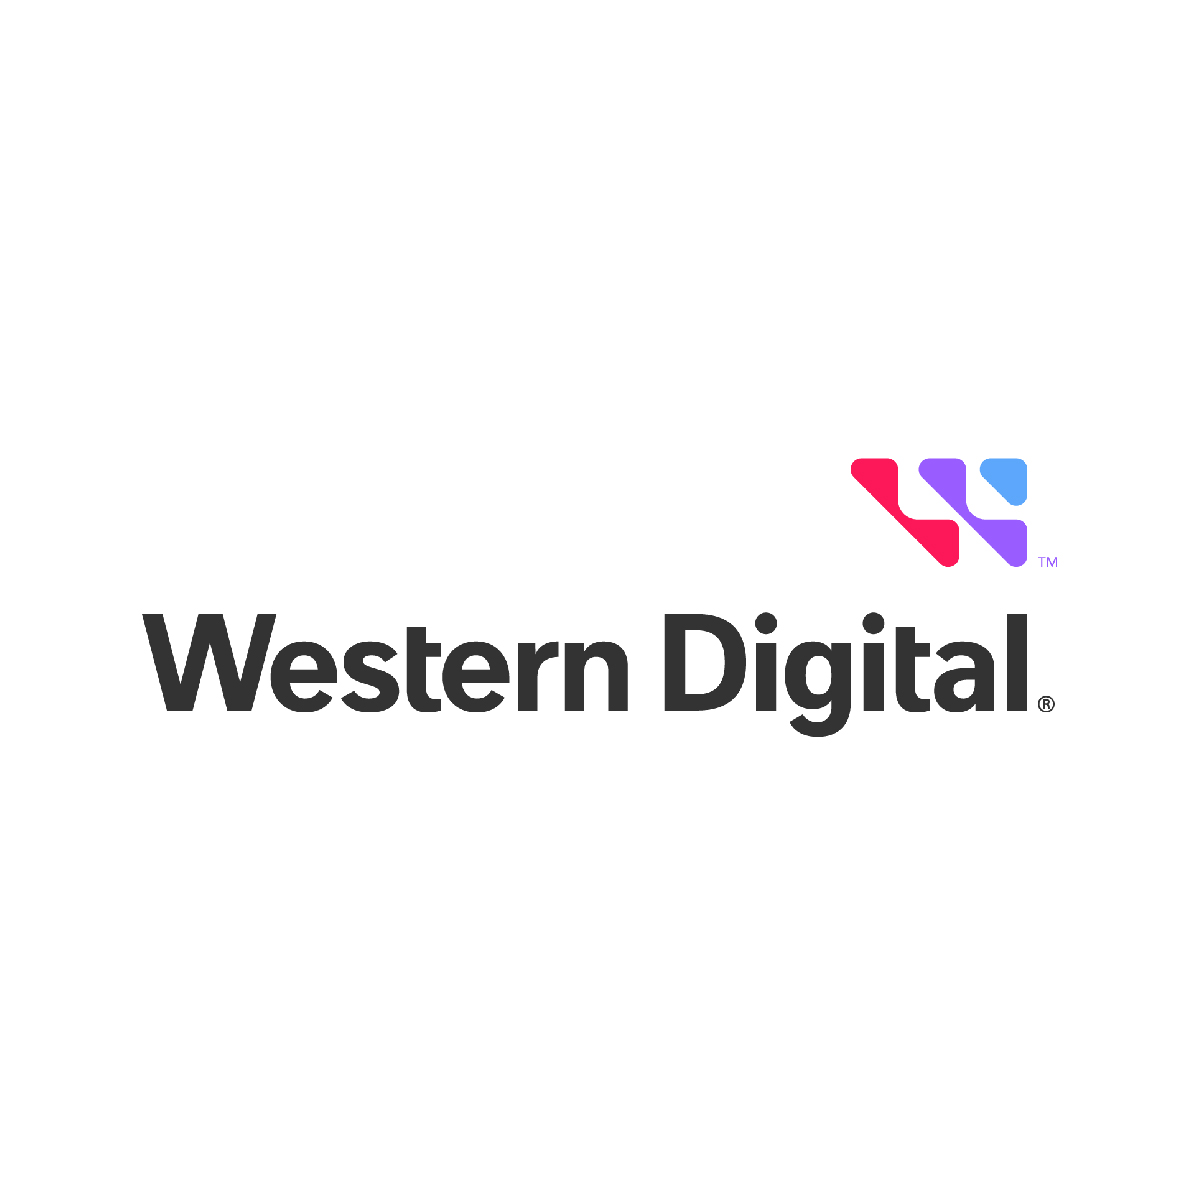 Proveedor de Western Digital tiene las mejores soluciones de almacenamiento digital compatibles con Mac y PC